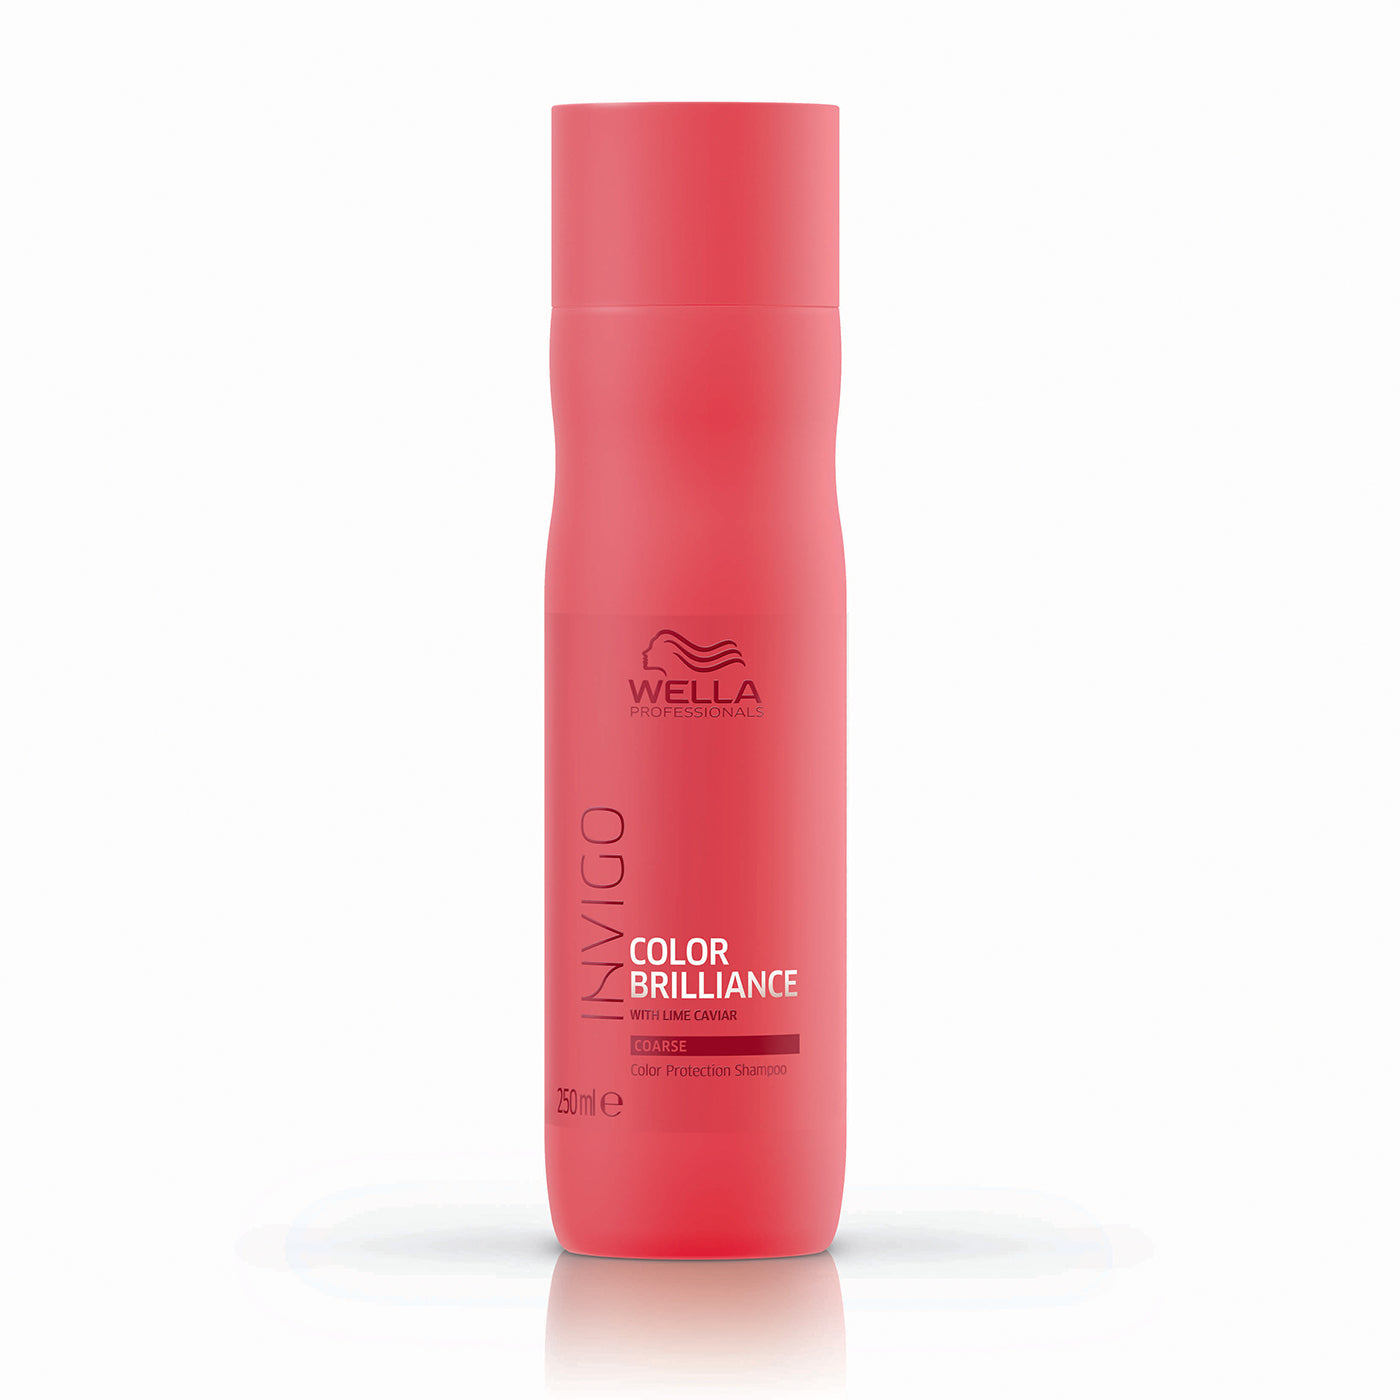 Wella INVIGO Color Brilliance Color Protection Shampoo - Coarse (250ml) - Ultimate Hair and Beauty